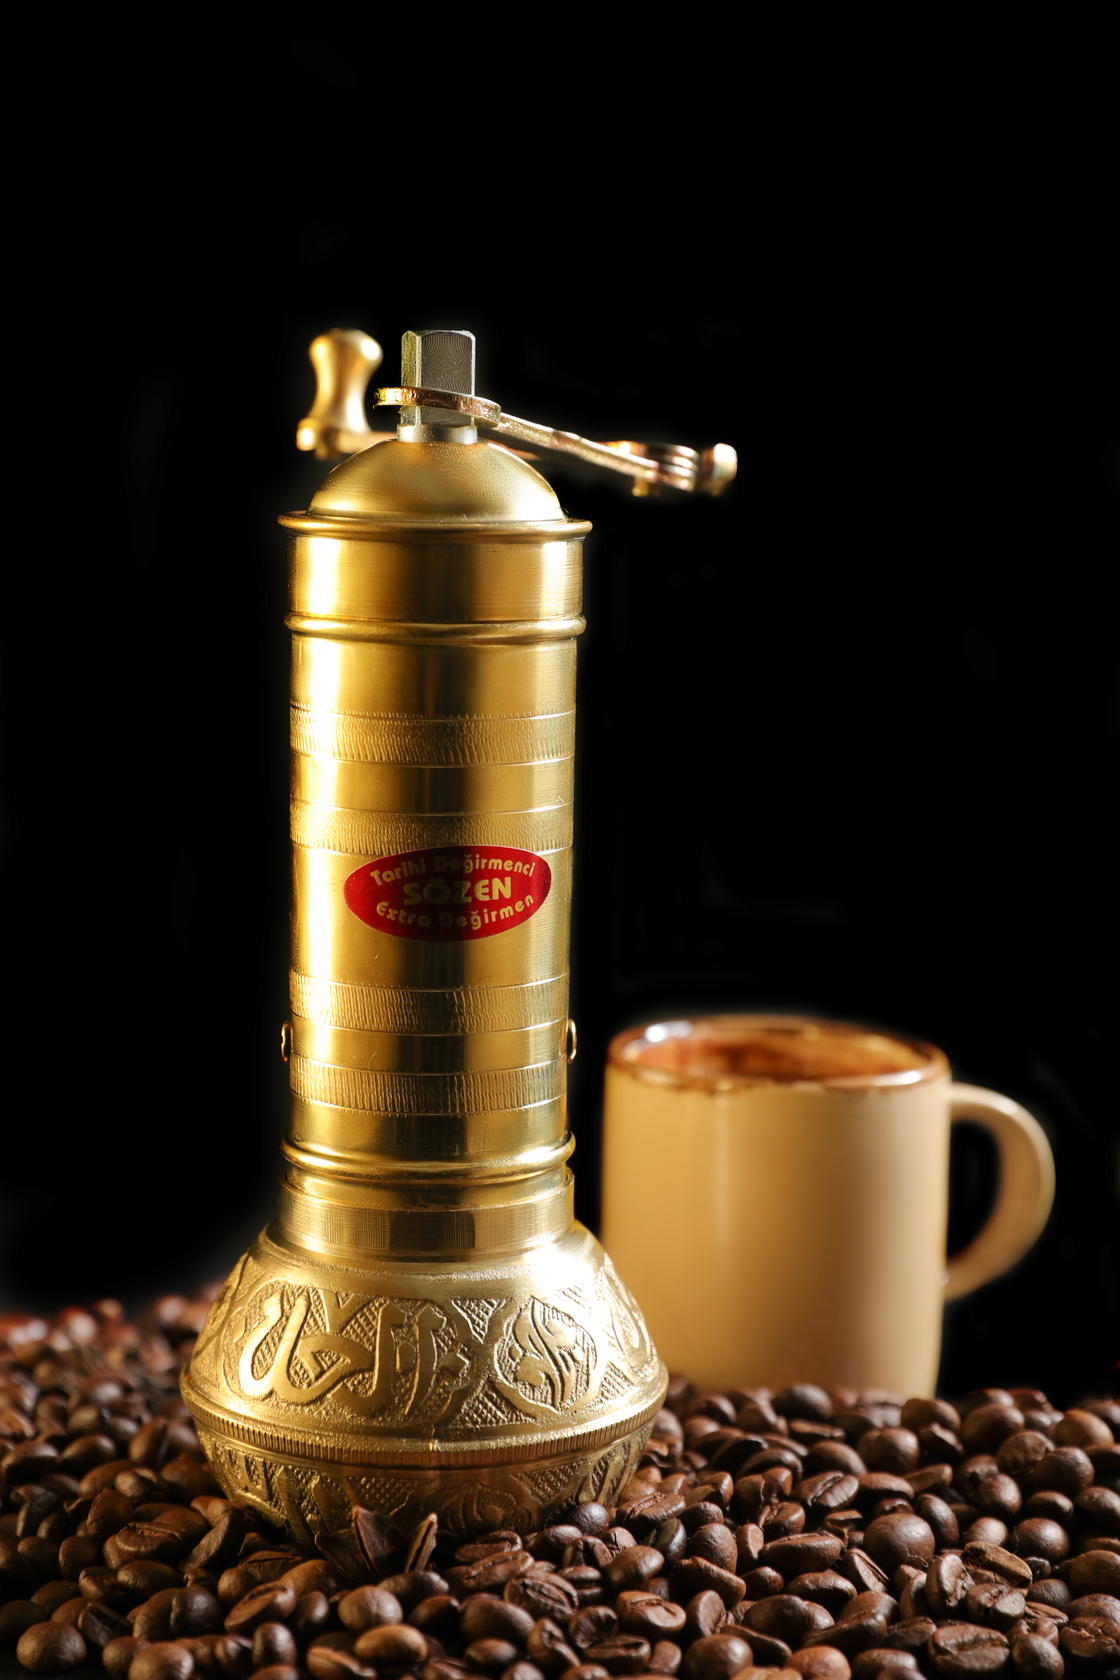 Turkish Coffee Grinder